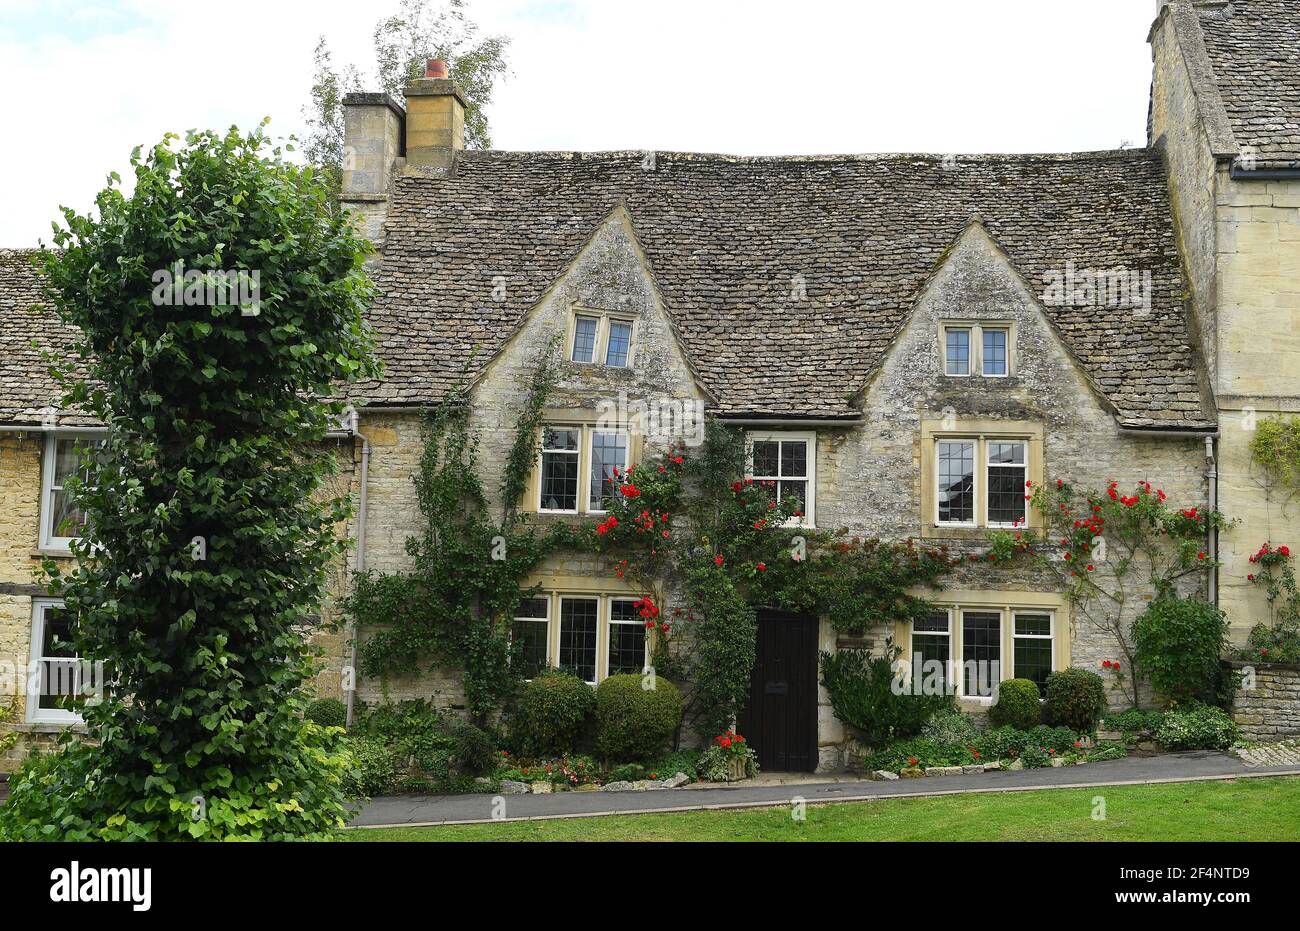 Burford Cotswolds Oxfordshire Angleterre Royaume-Uni Grande-Bretagne Cotswold village cottage en pierre PHOTO DE SAM BAGNALL Banque D'Images